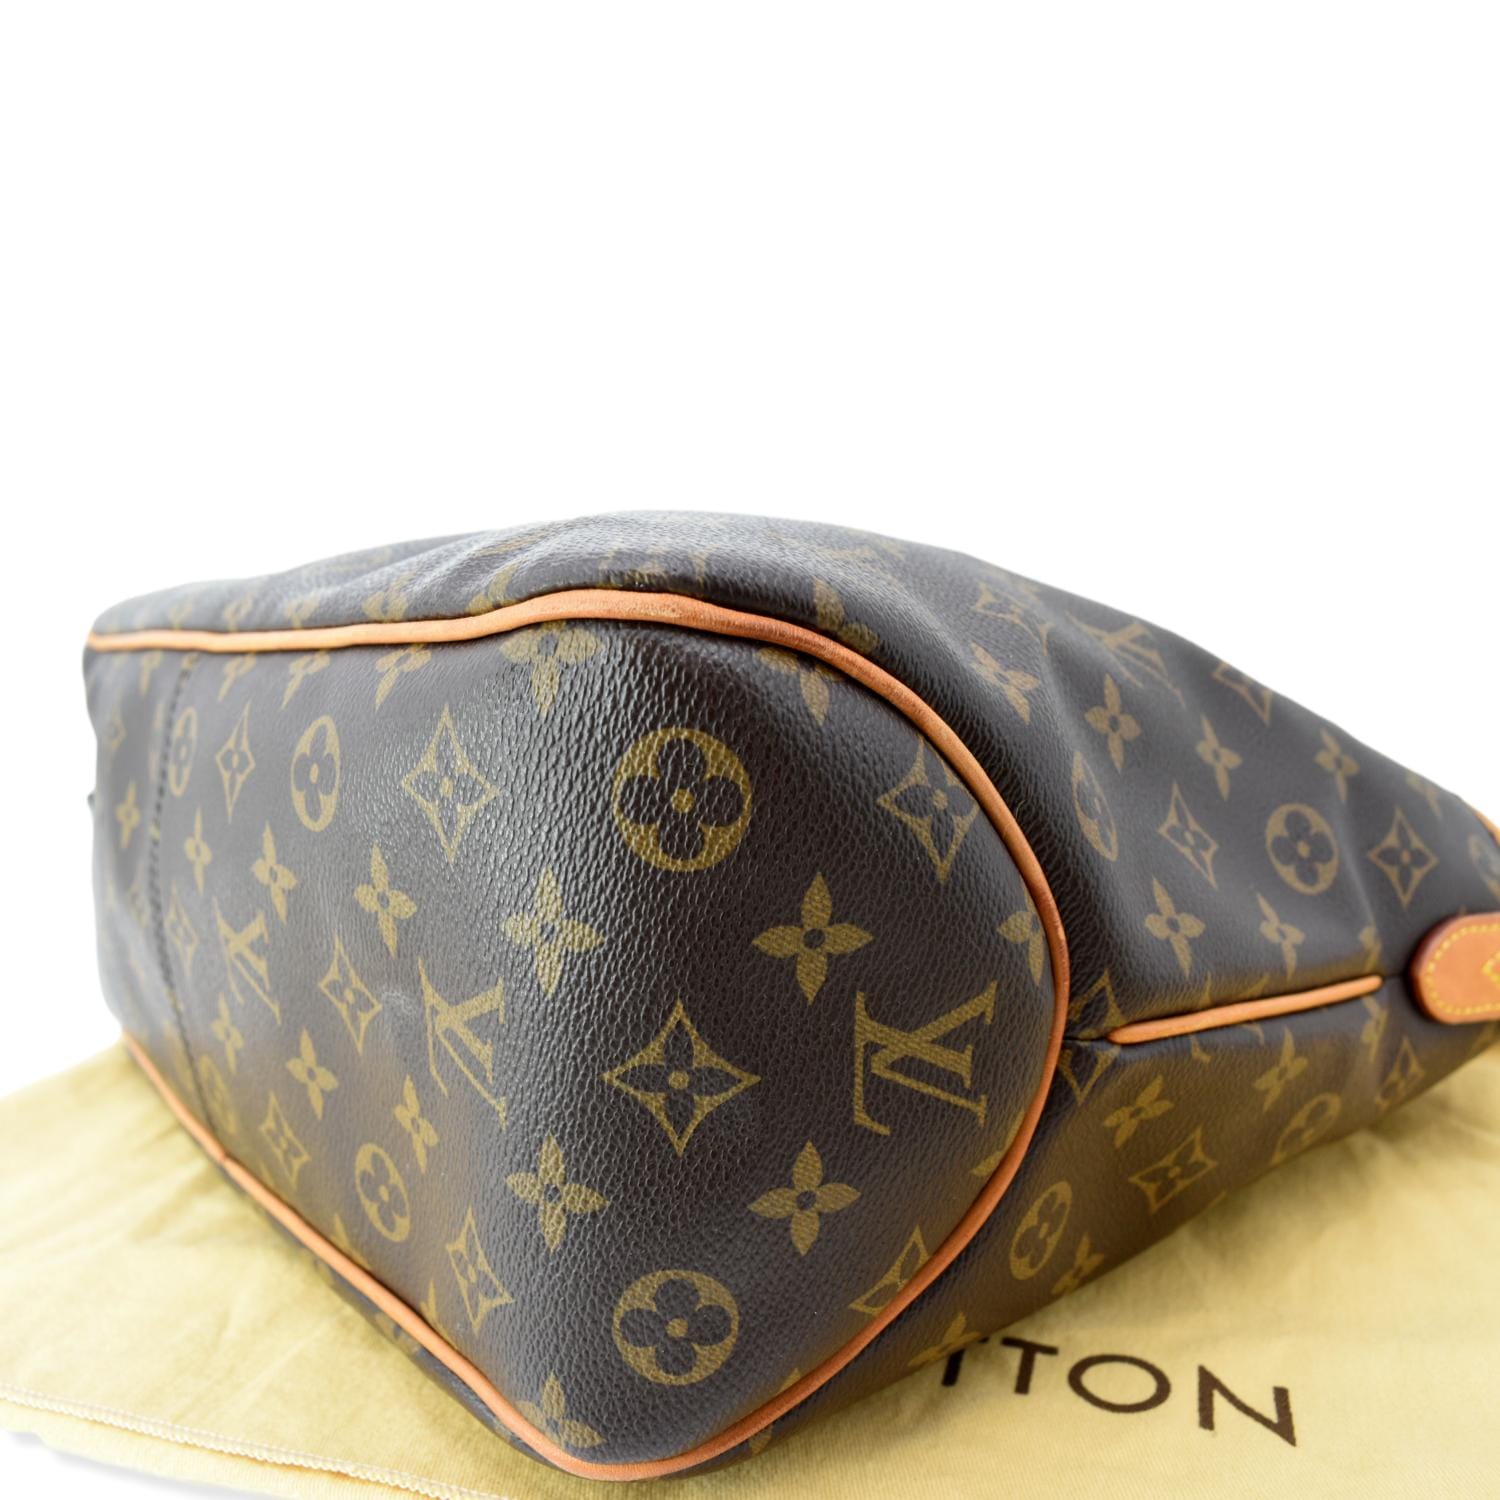 Delightful cloth handbag Louis Vuitton Brown in Cloth - 37302612